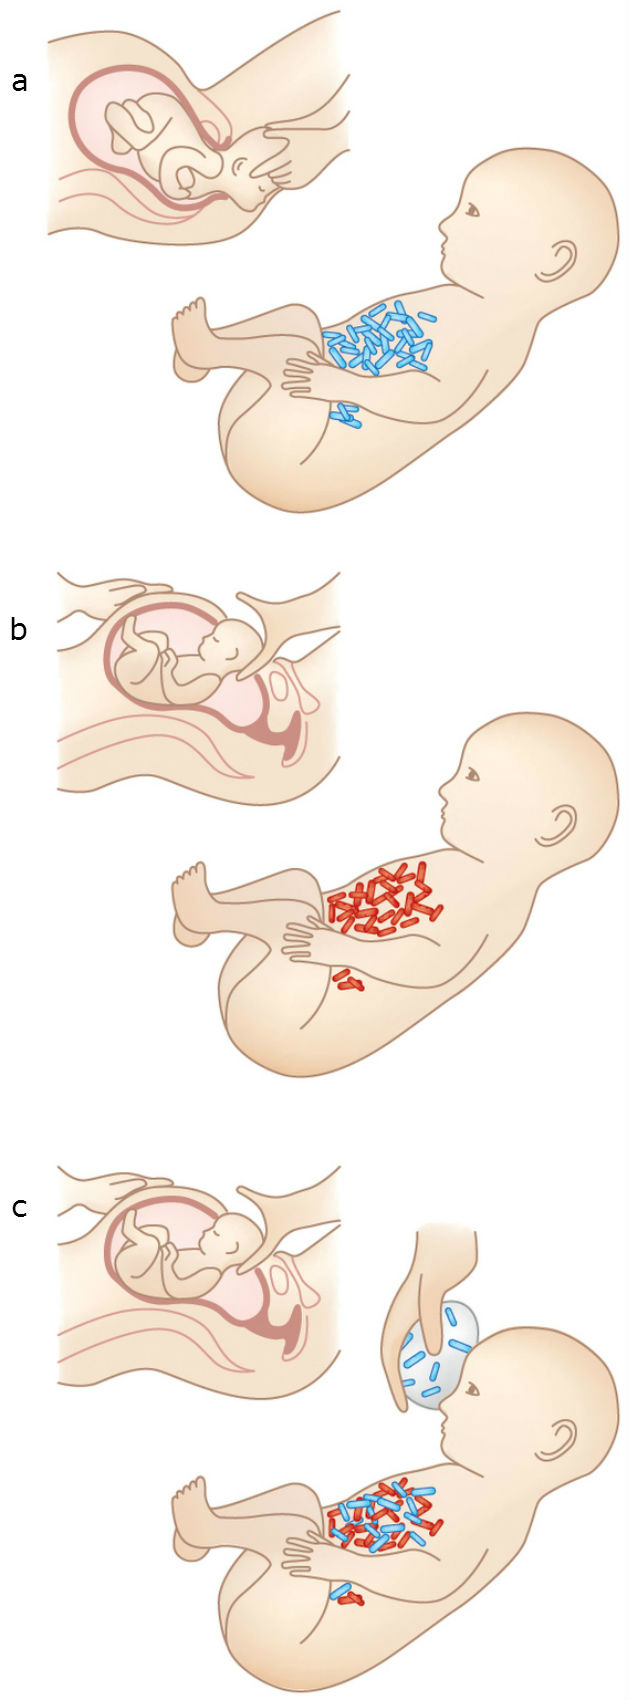 Fluido vaginal da mãe em bebê nascido de cesárea poderia preveni-lo de doenças